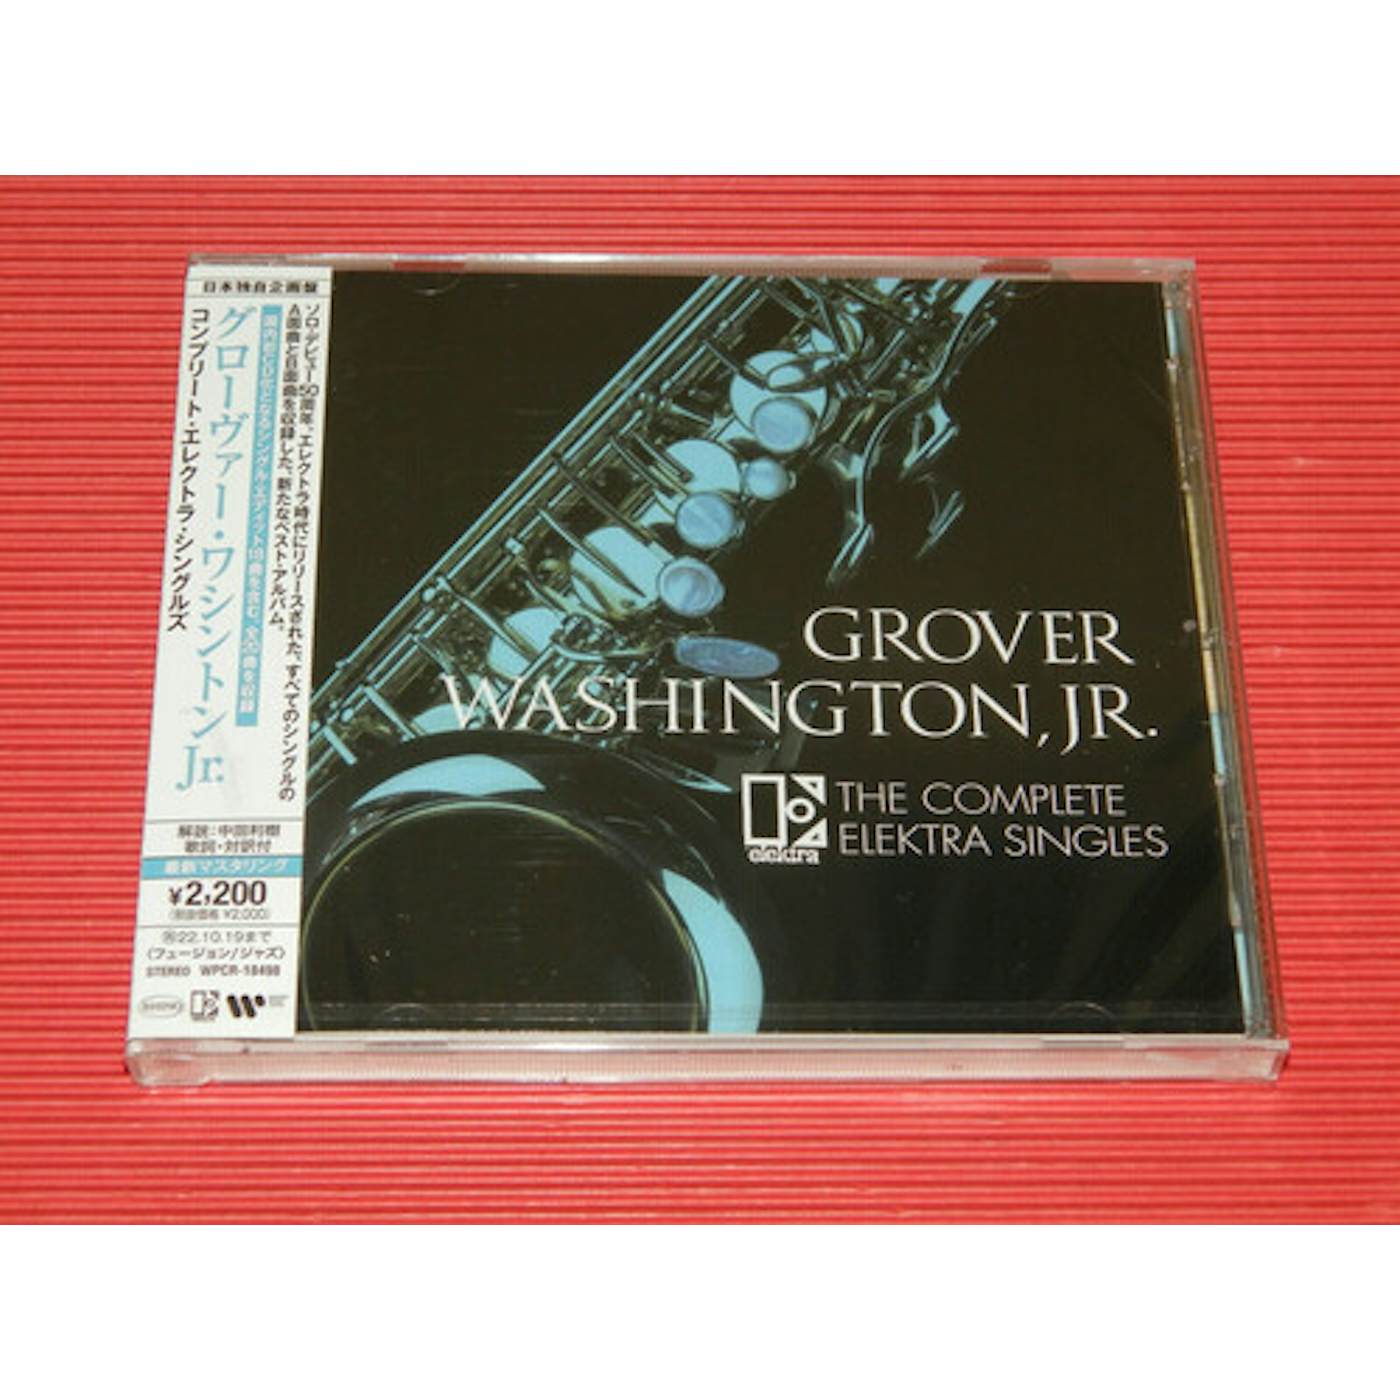 Grover Washington, Jr. Complete Electra Singles CD